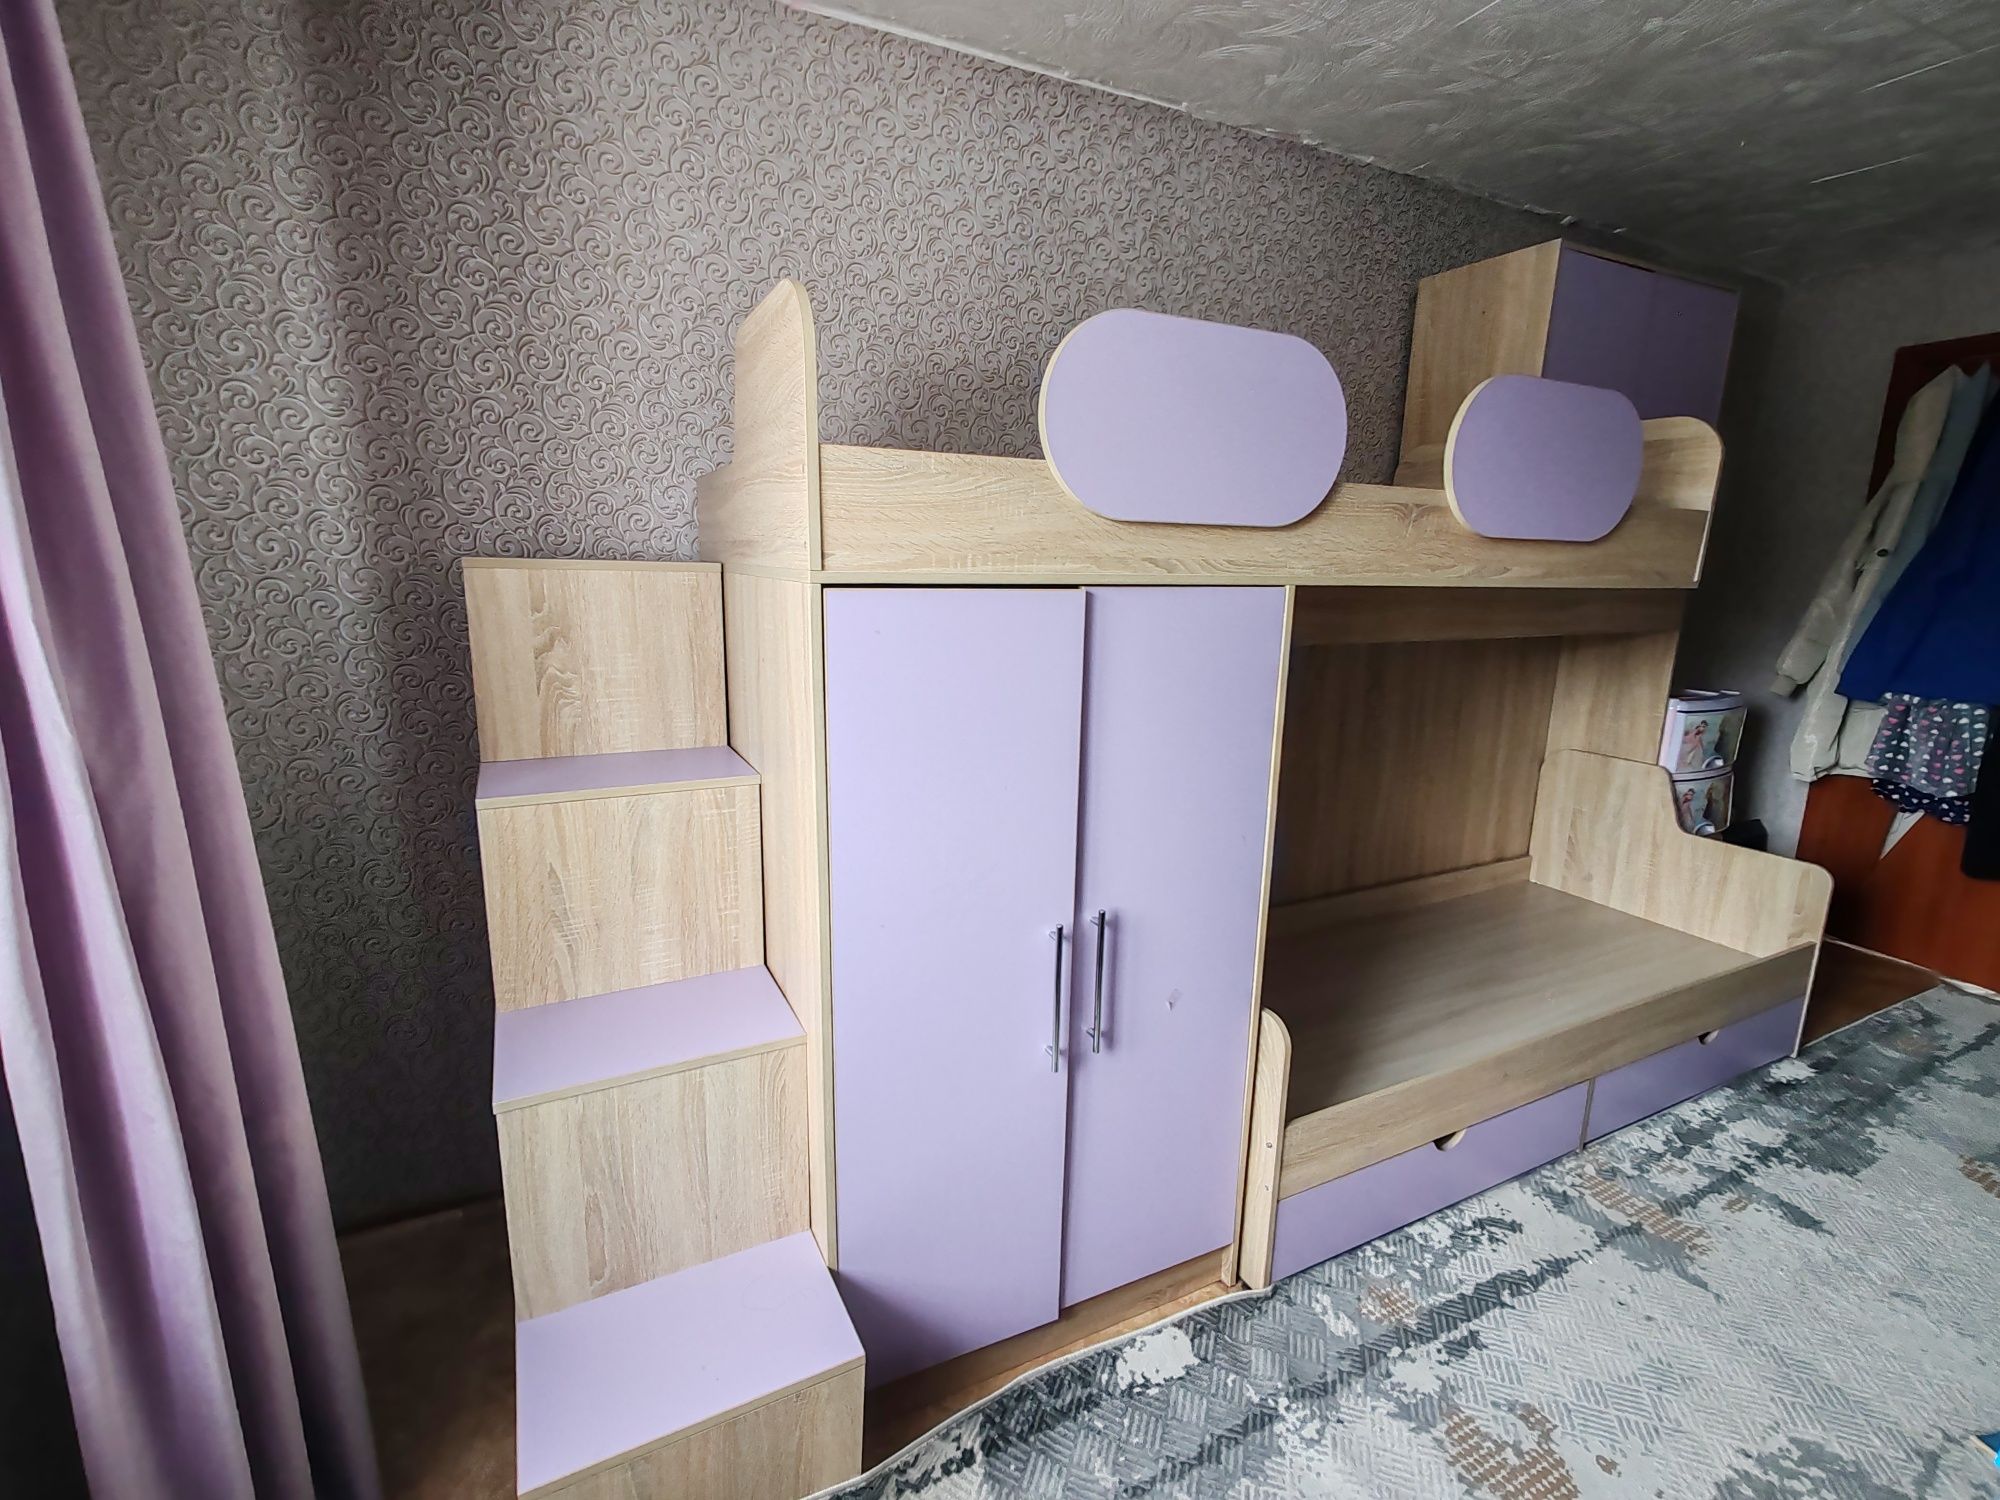 Кровать двухярусная со встроенными шкафами шкафами